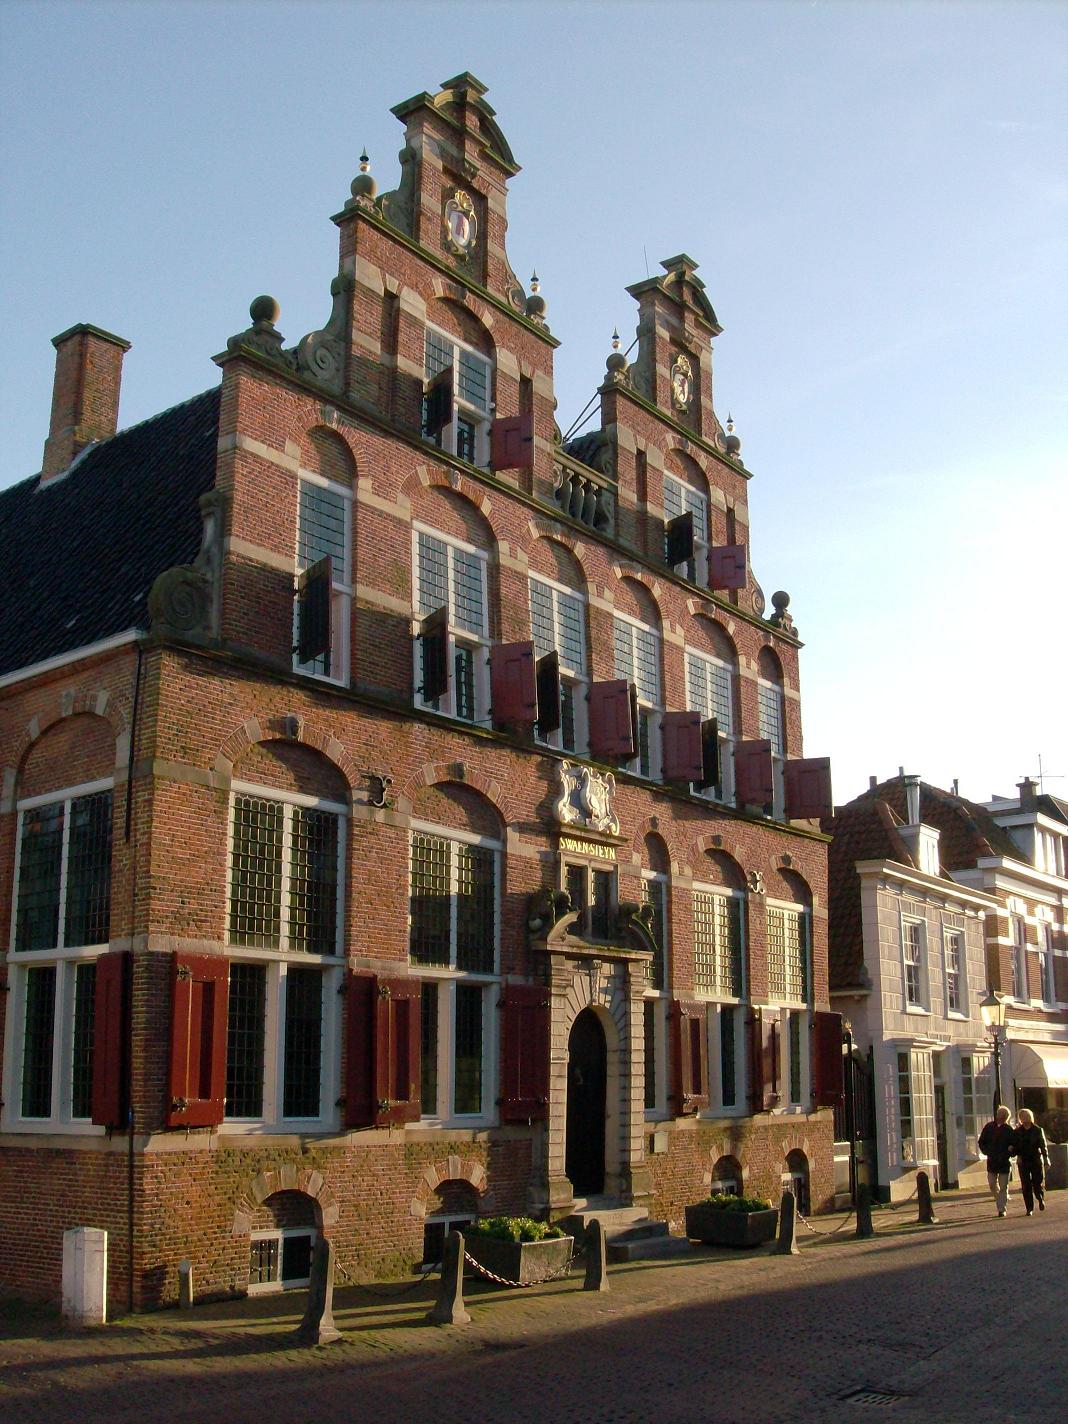 Swaensteyn,_Raadhuis_van_Leidschendam-Voorburg,_Nederland,_Town_hall_of_Voorburg,_Netherlands.jpg